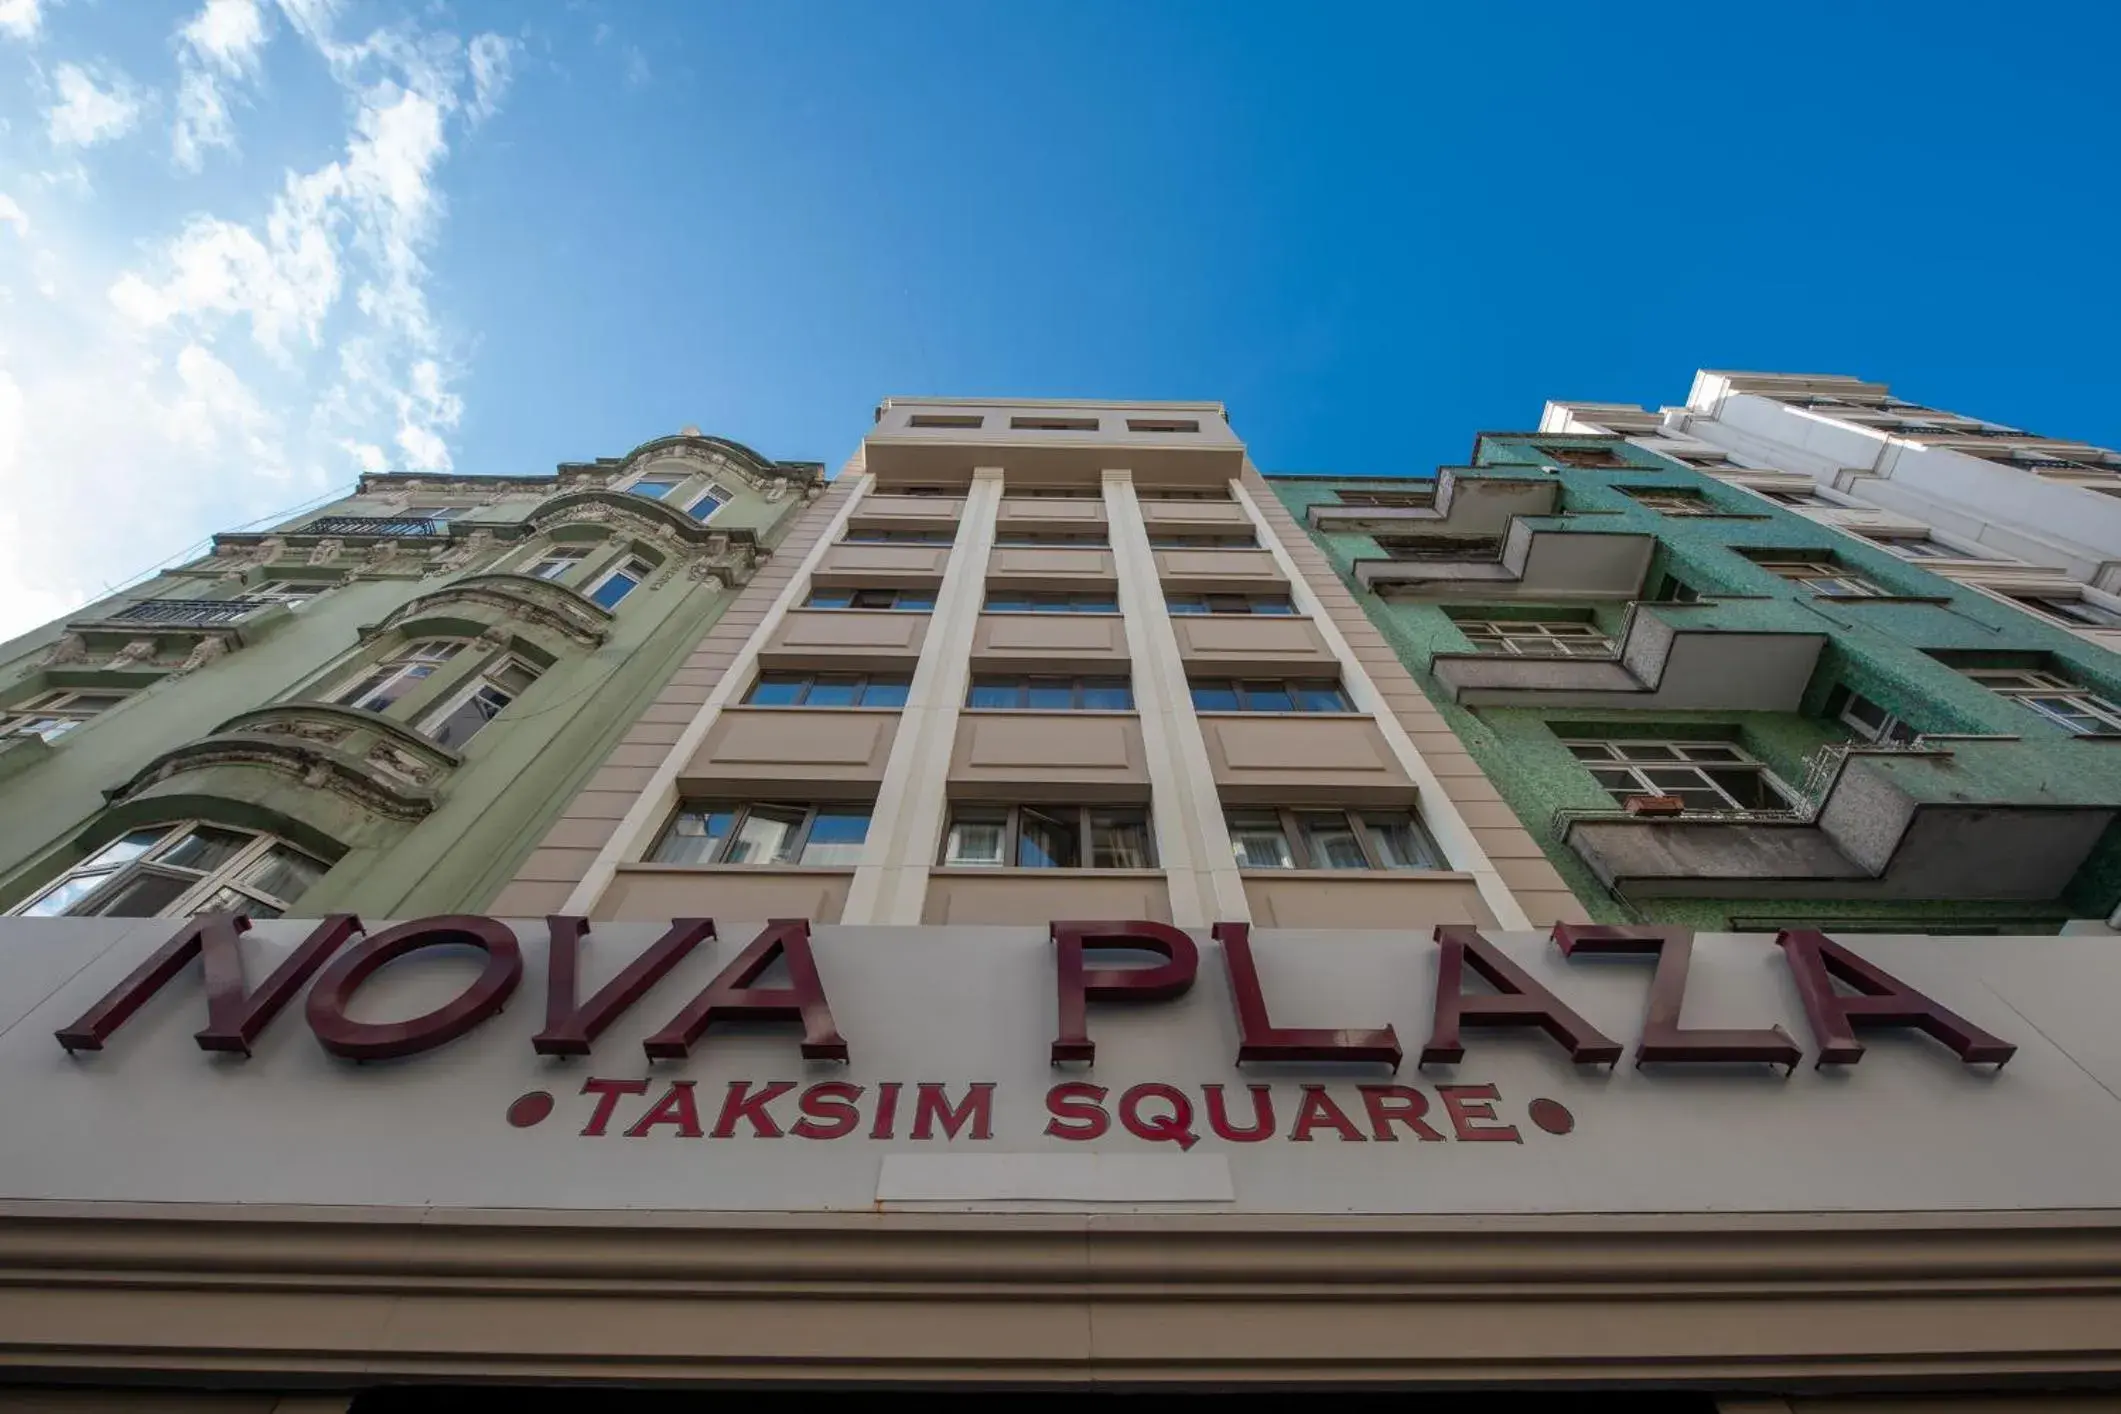 Property Building in Nova Plaza Taksim Square